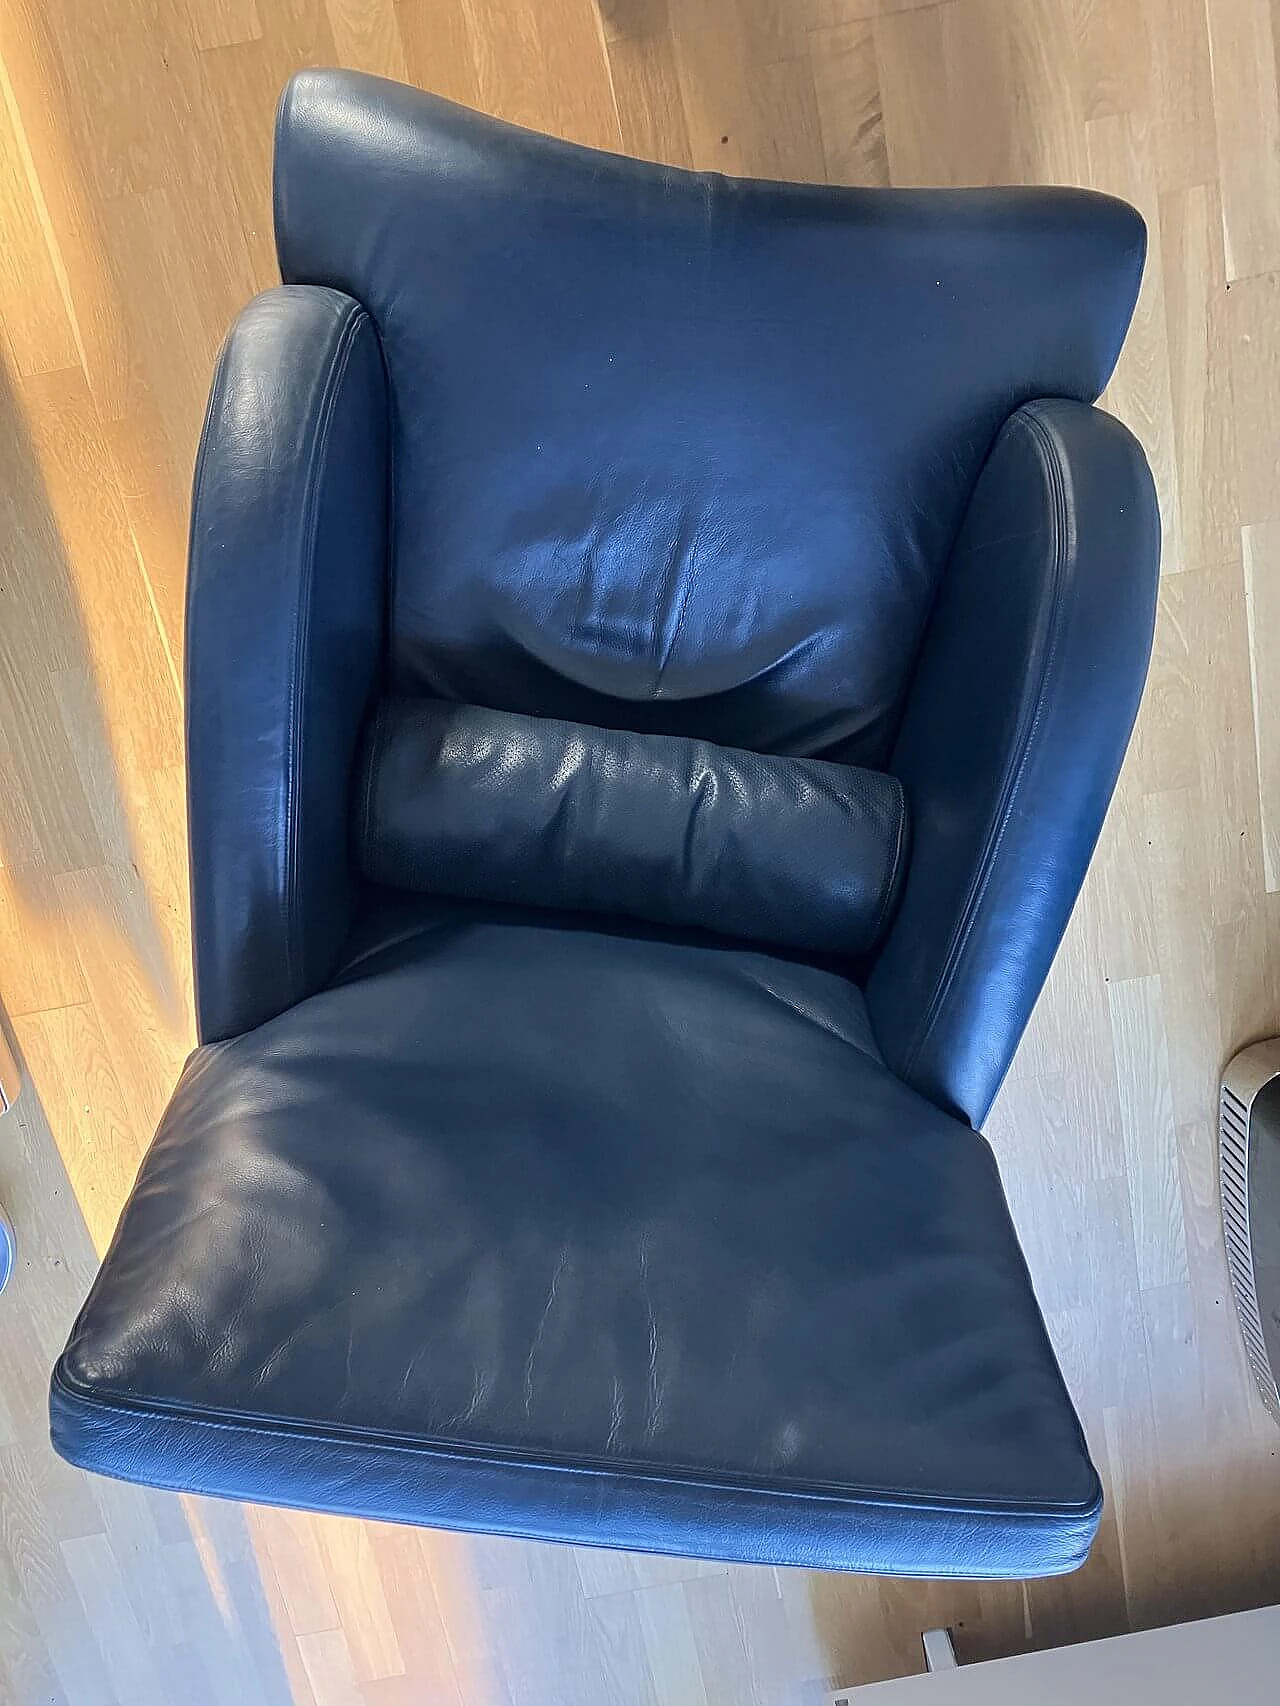 Oriente armchair in dark blue Maxalto leather by Antonio Citterio for B&B Italia 6